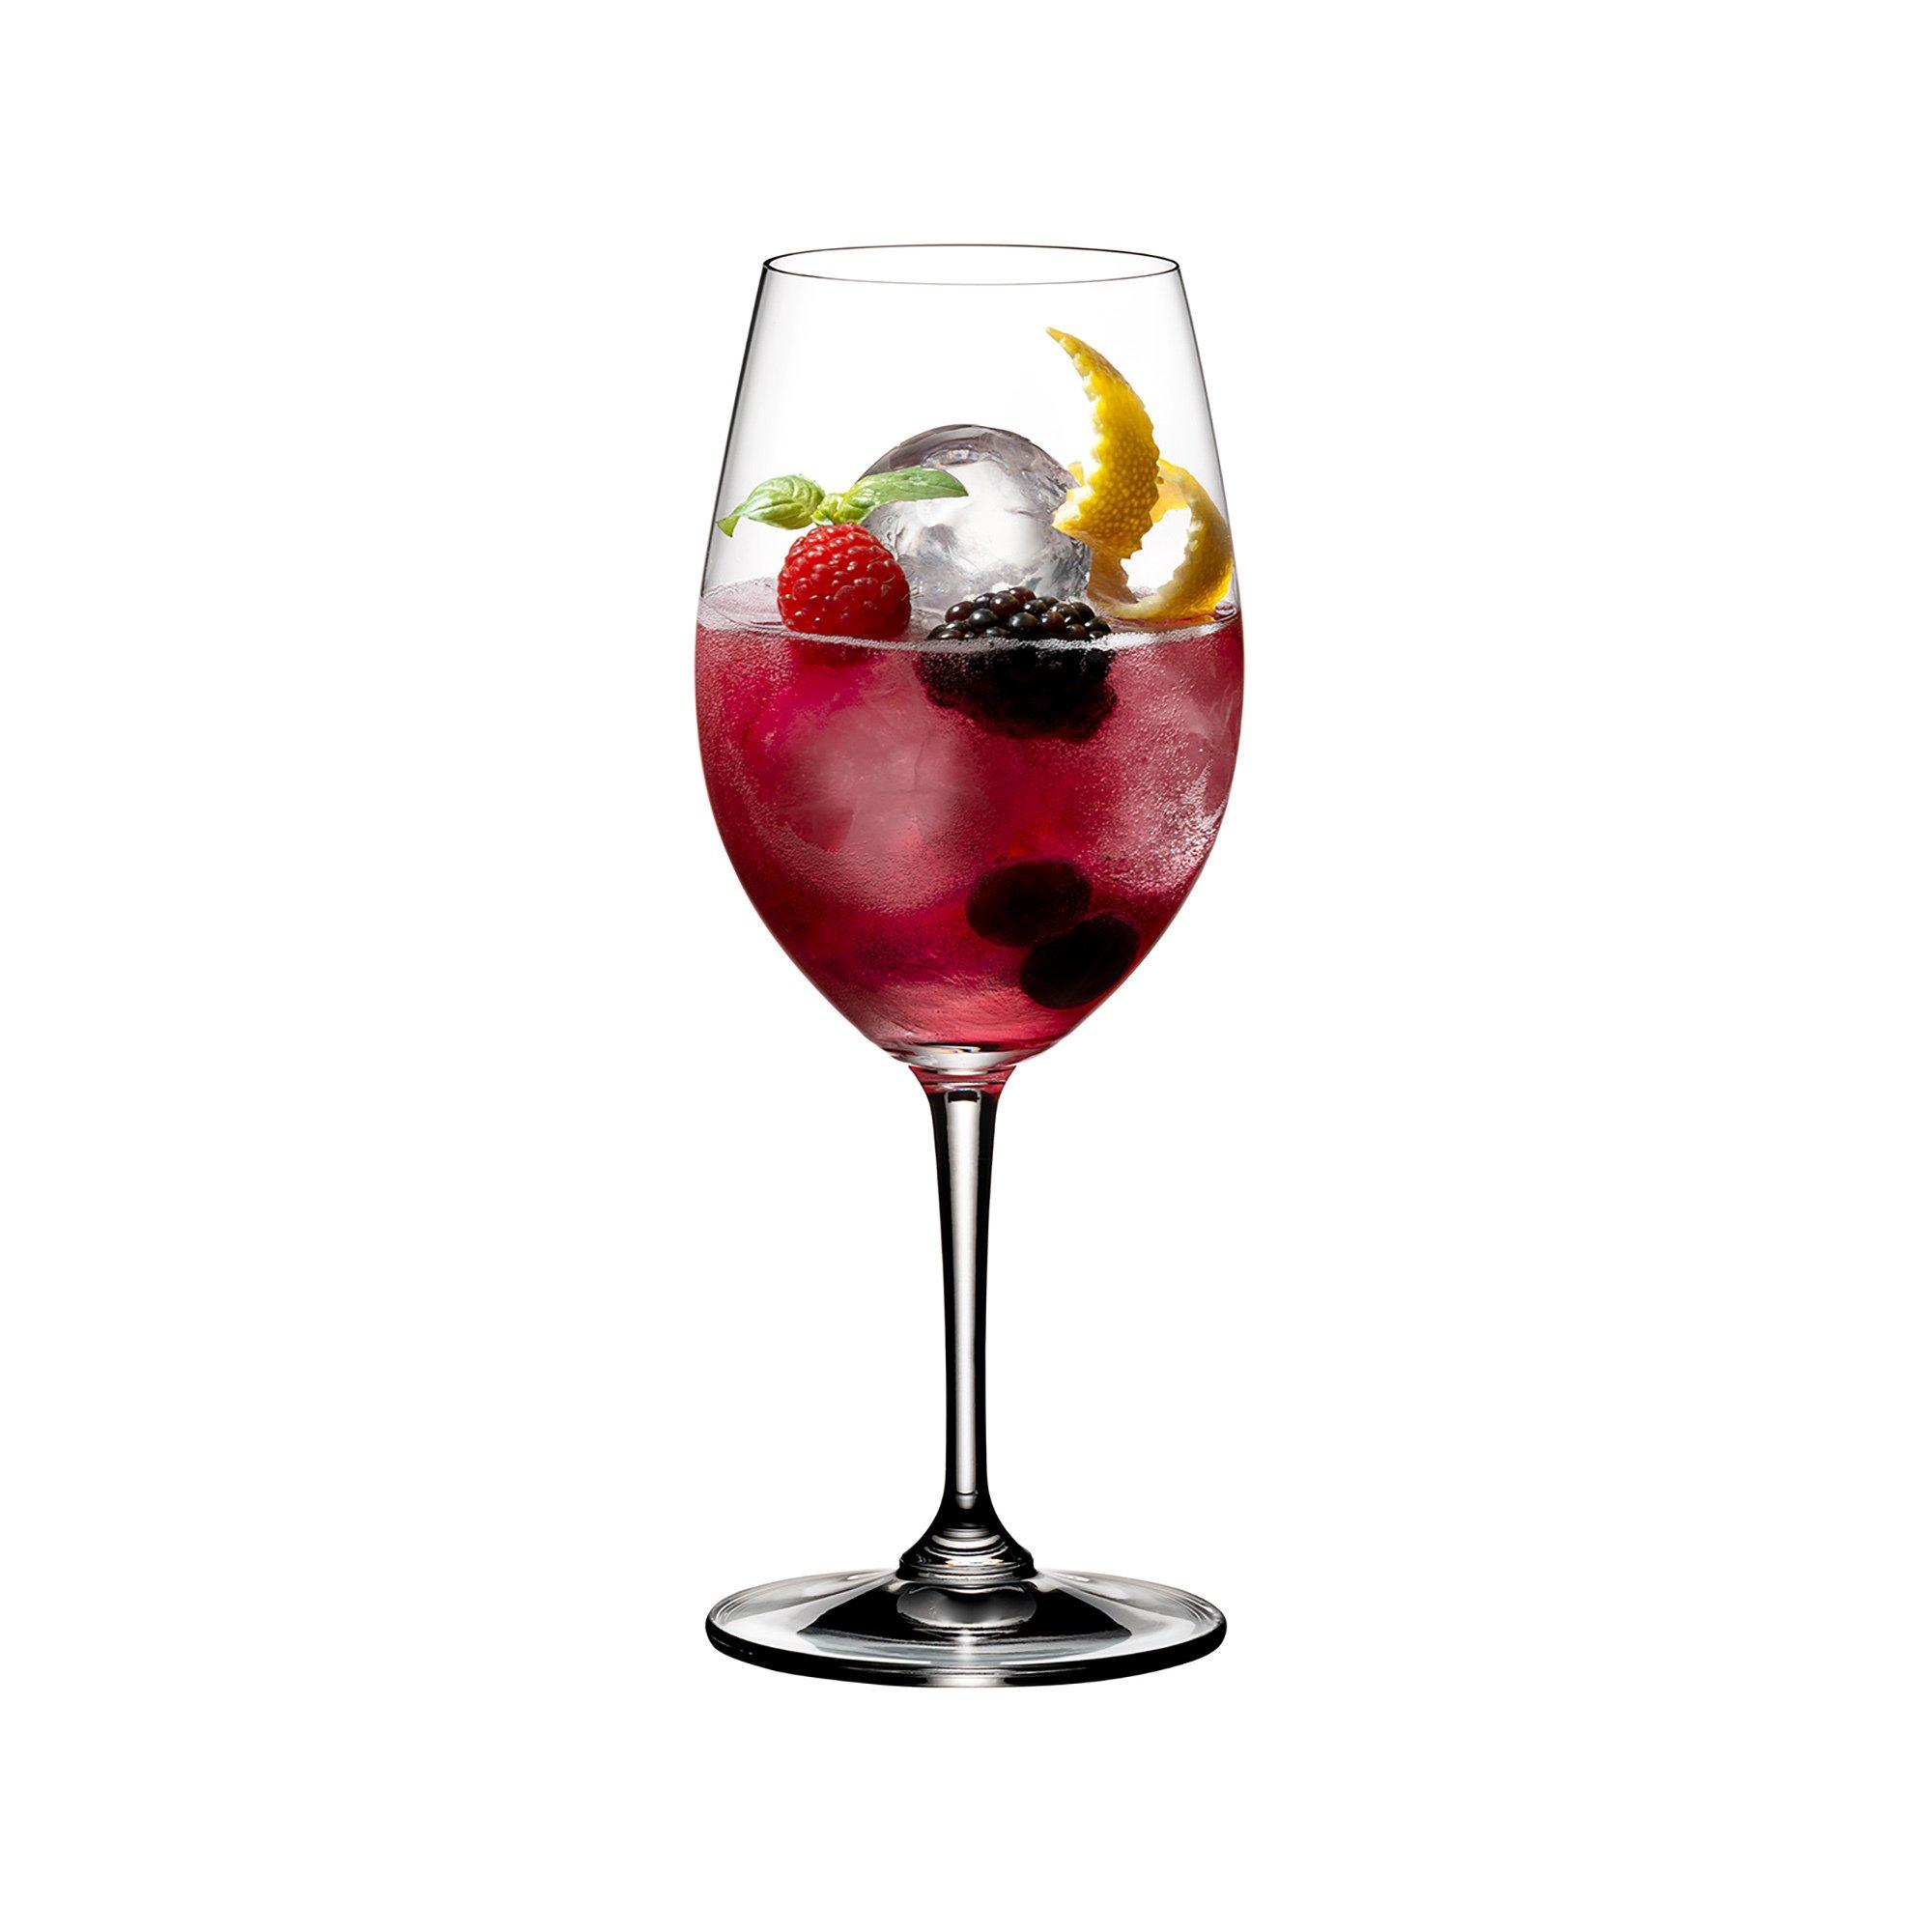 RIEDEL 4 teiliges Gläser-Set Spritz Drinks 